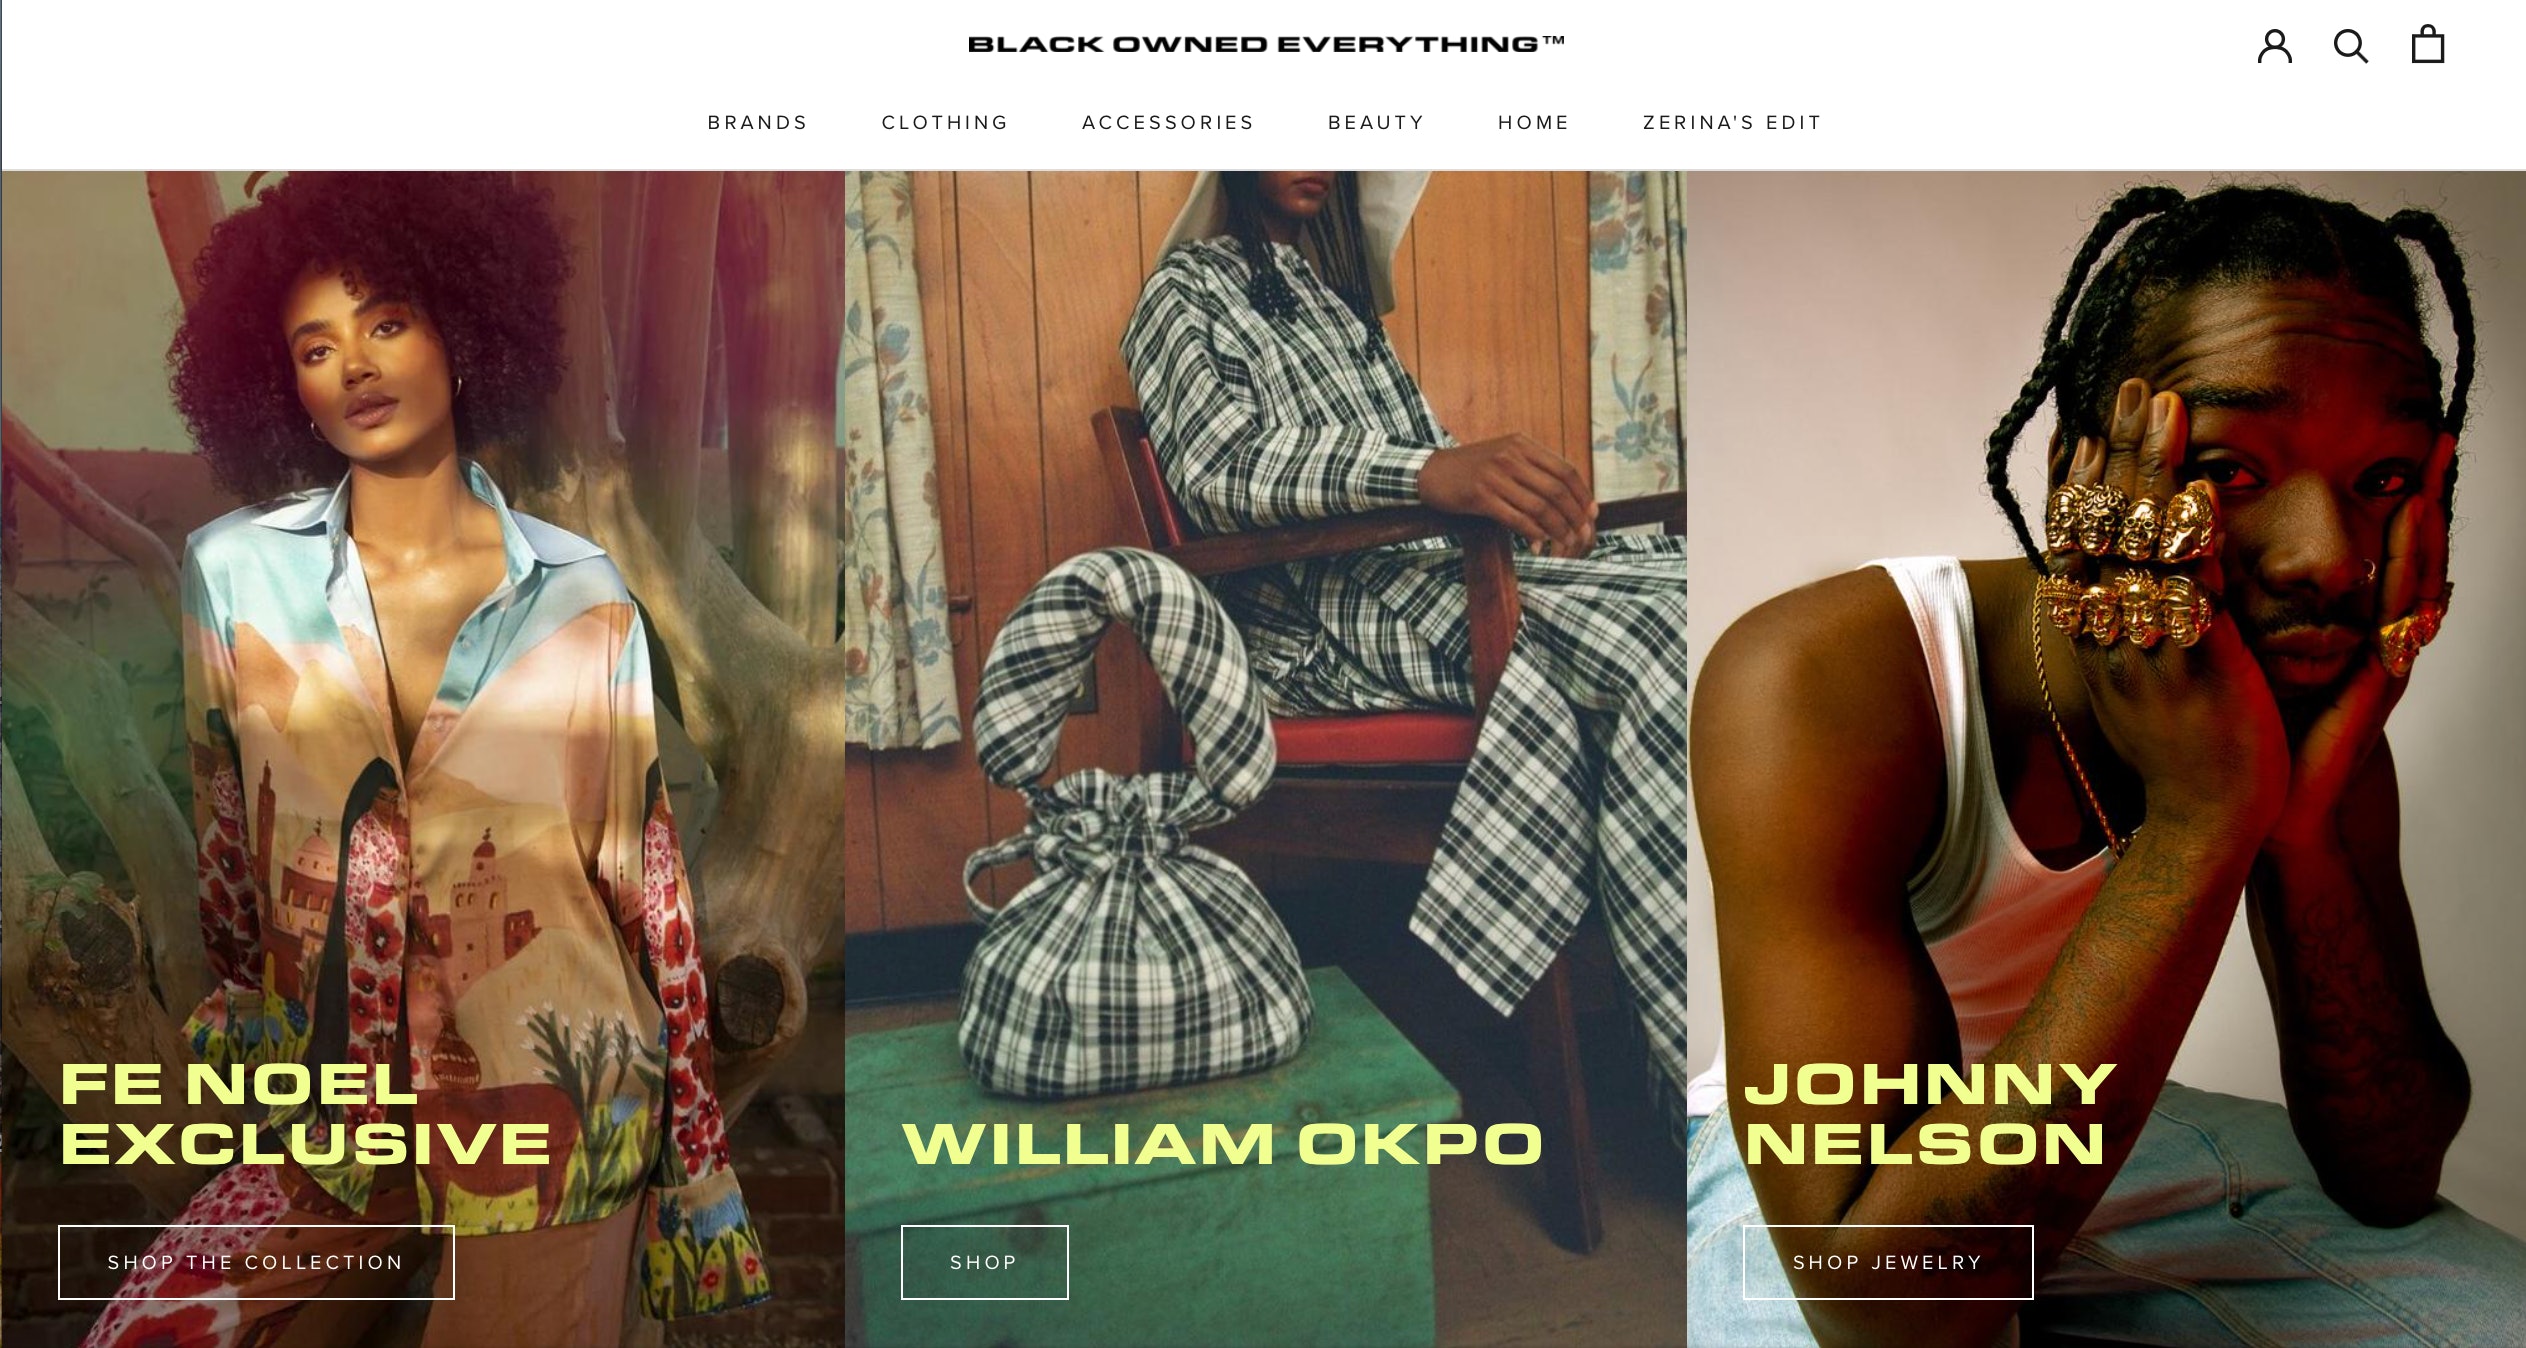 Zerina Akers' digitale butikkfront fremhever svarteide merkevarer